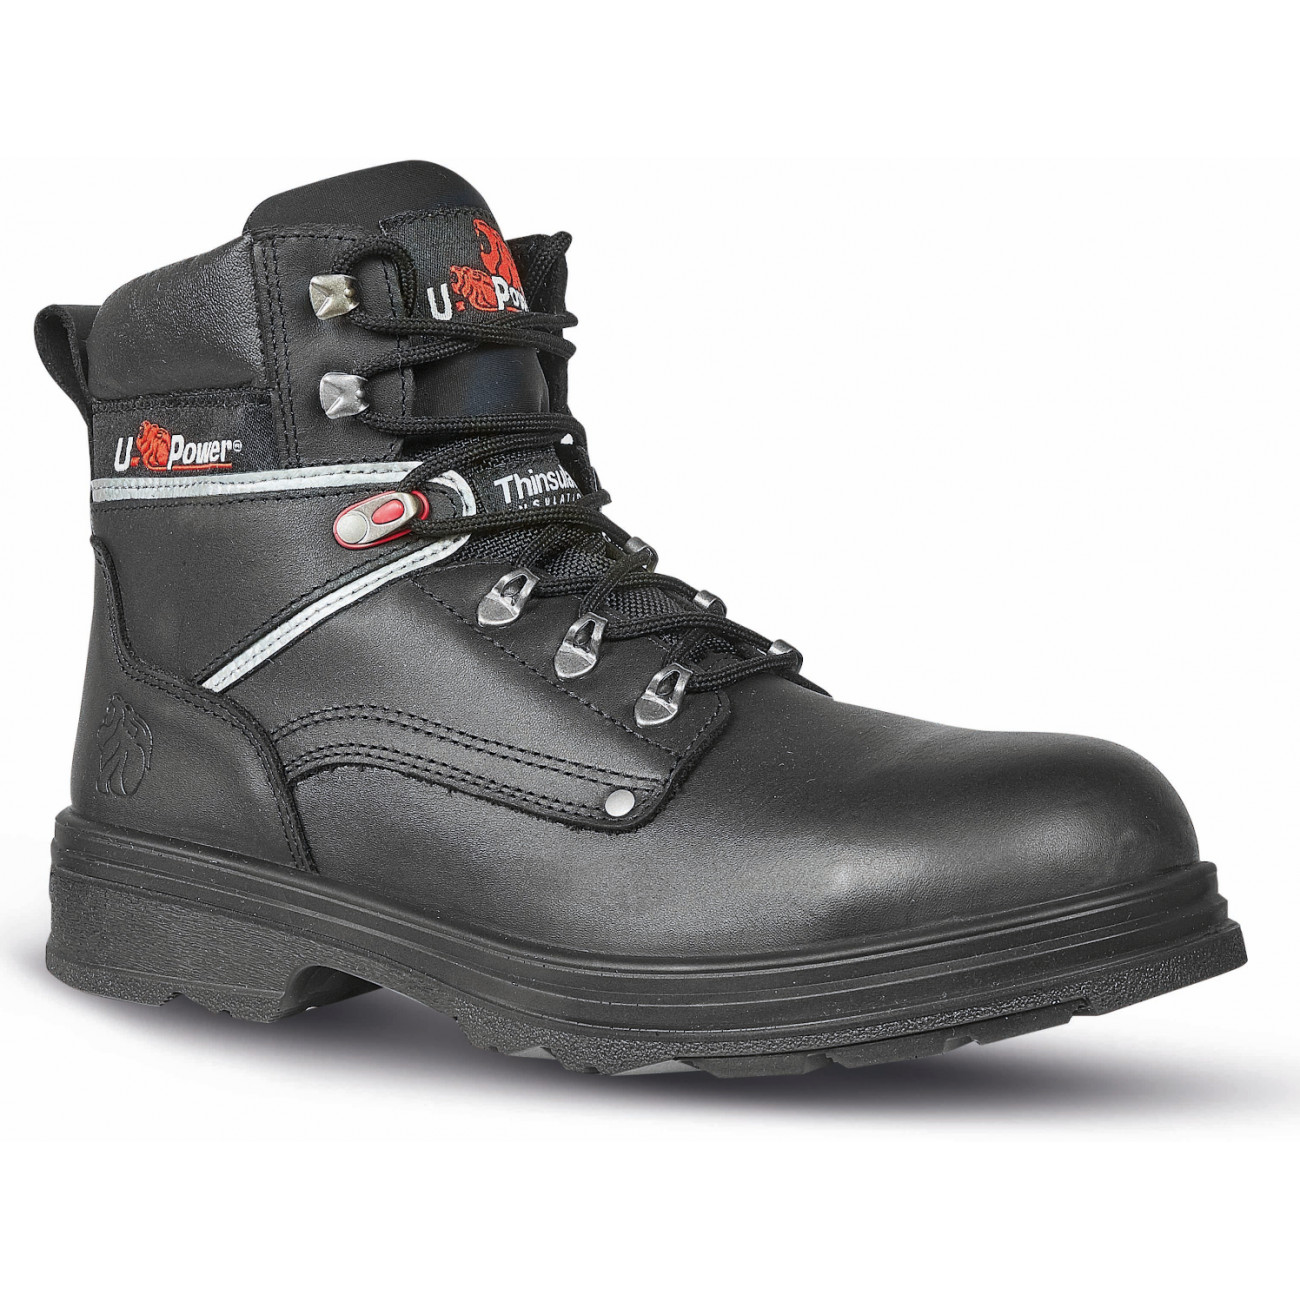 Chaussures de sécurité noires - U-Power, modèle Scuro